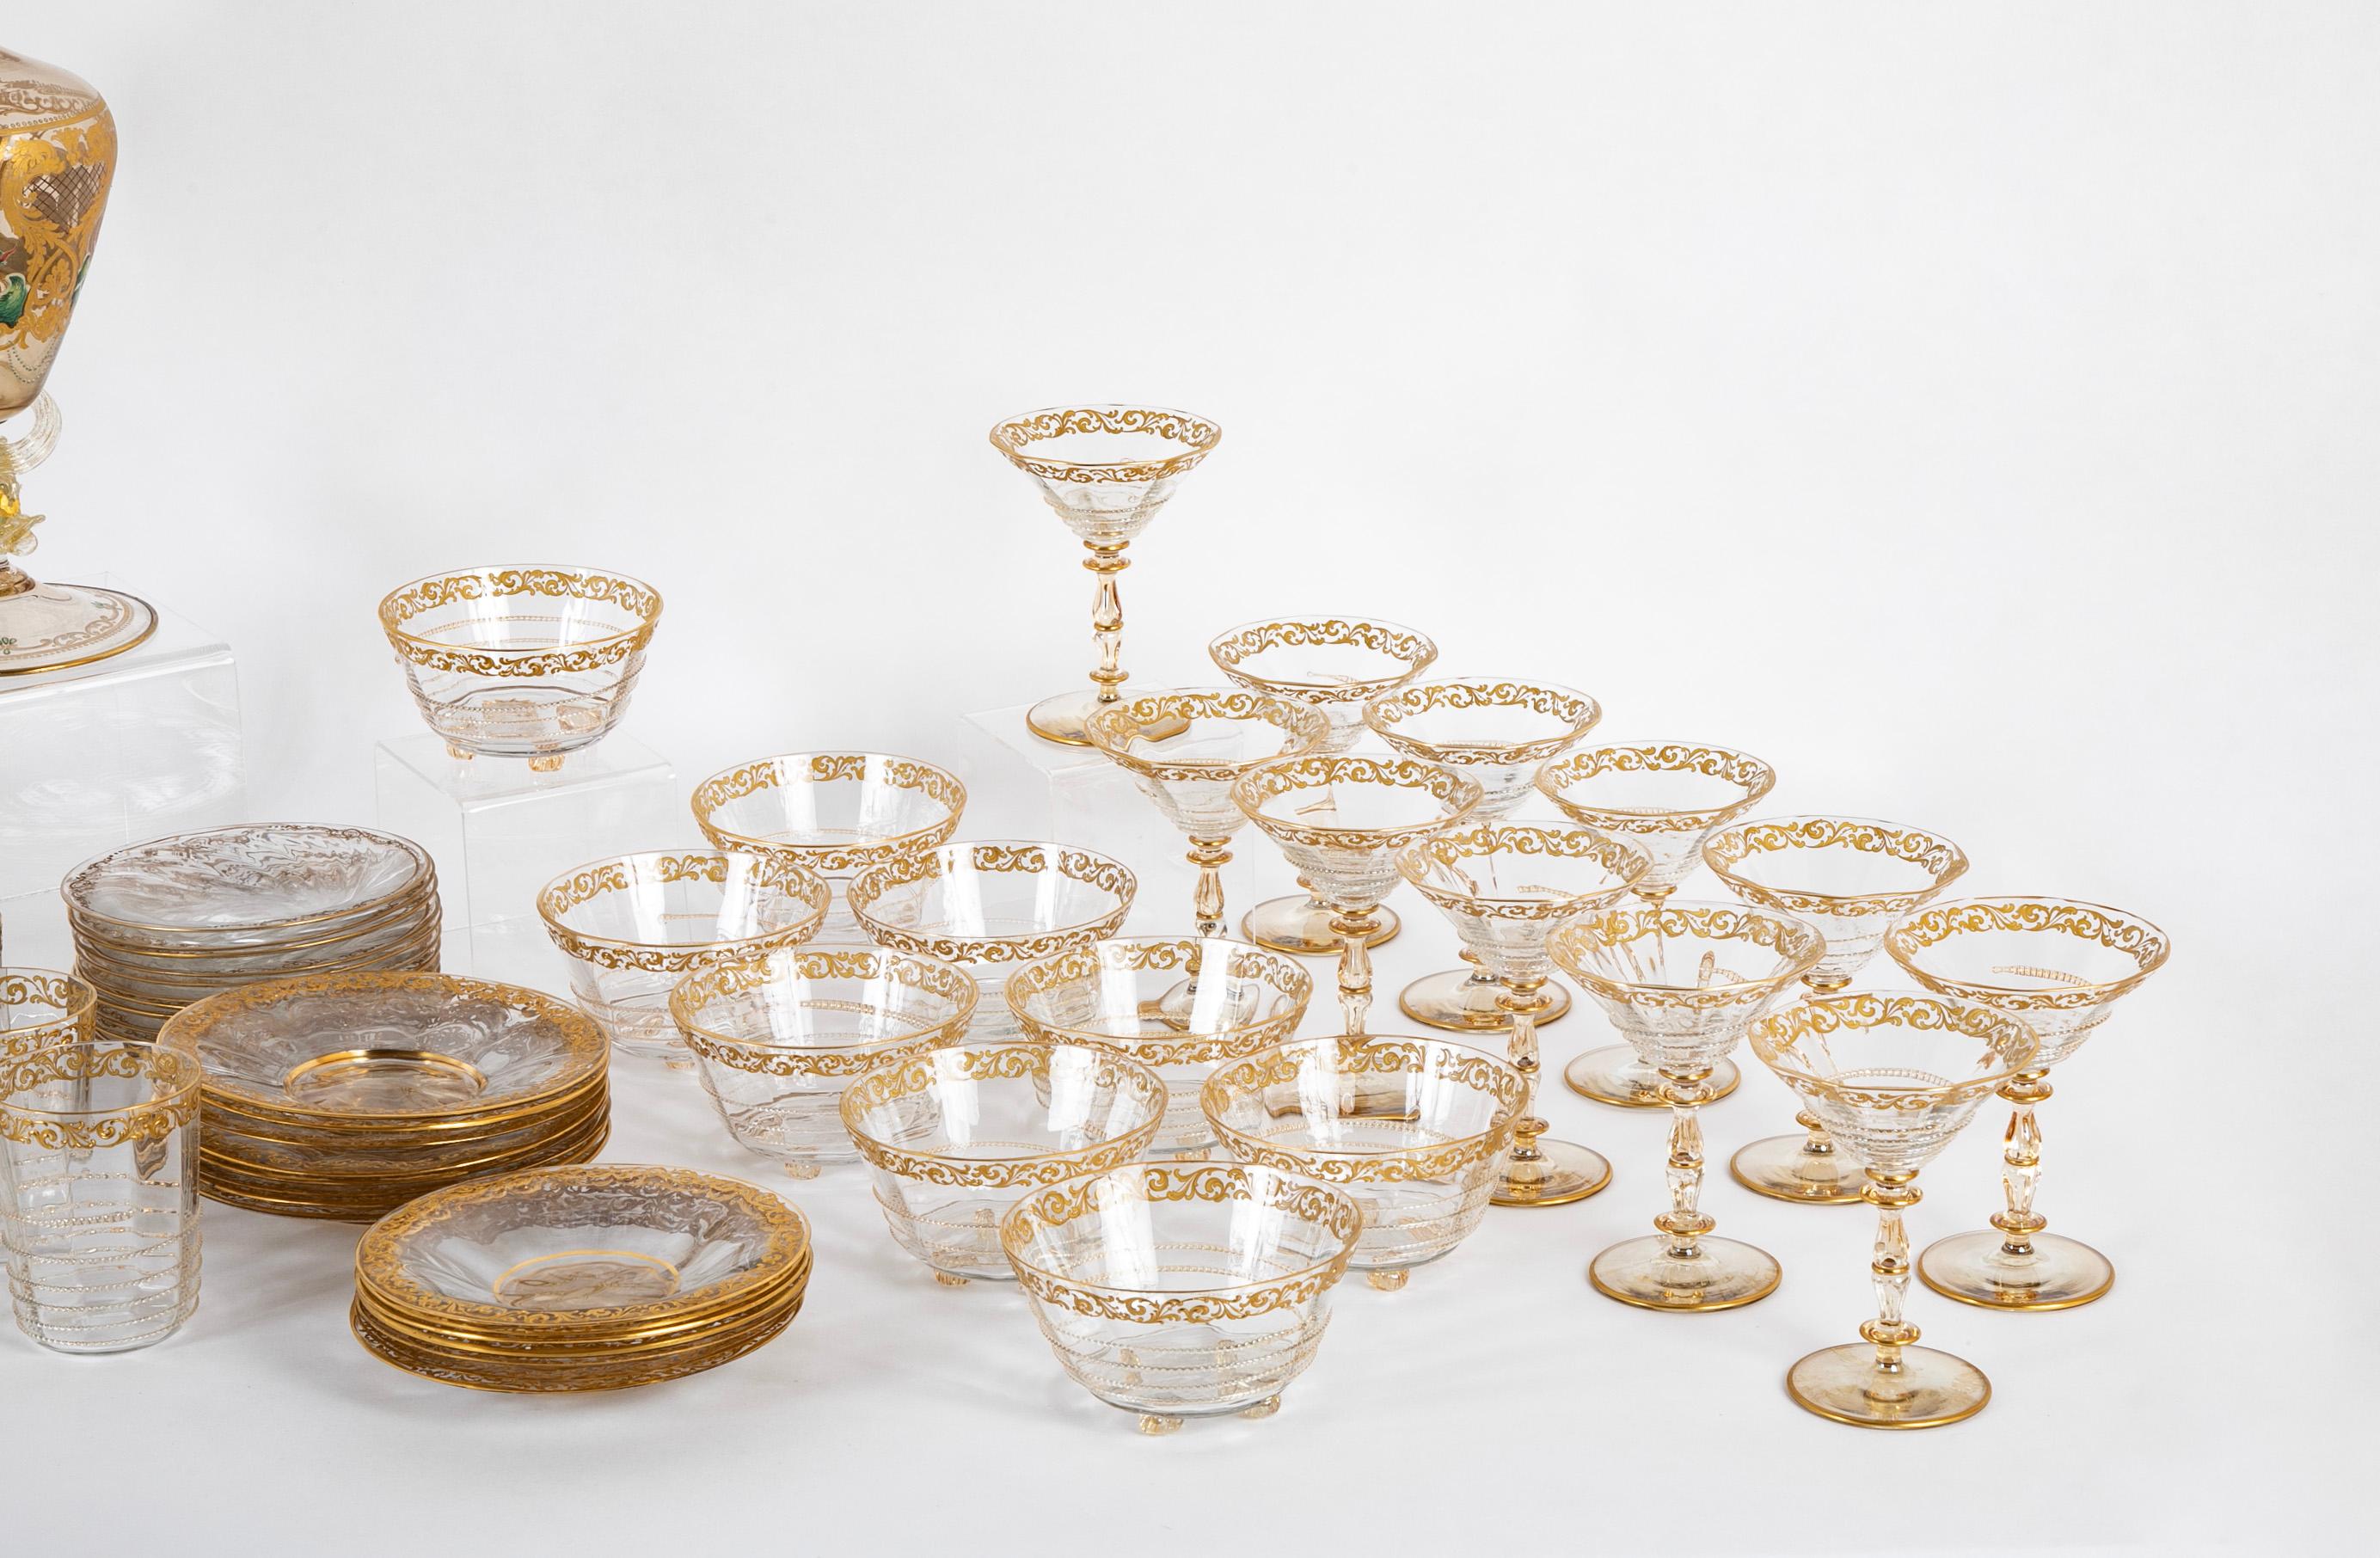 Une magnifique collection de verrerie vénitienne de la fin du XIXe siècle et du début du XXe siècle.  

Comprenant :  12 gobelets : 4